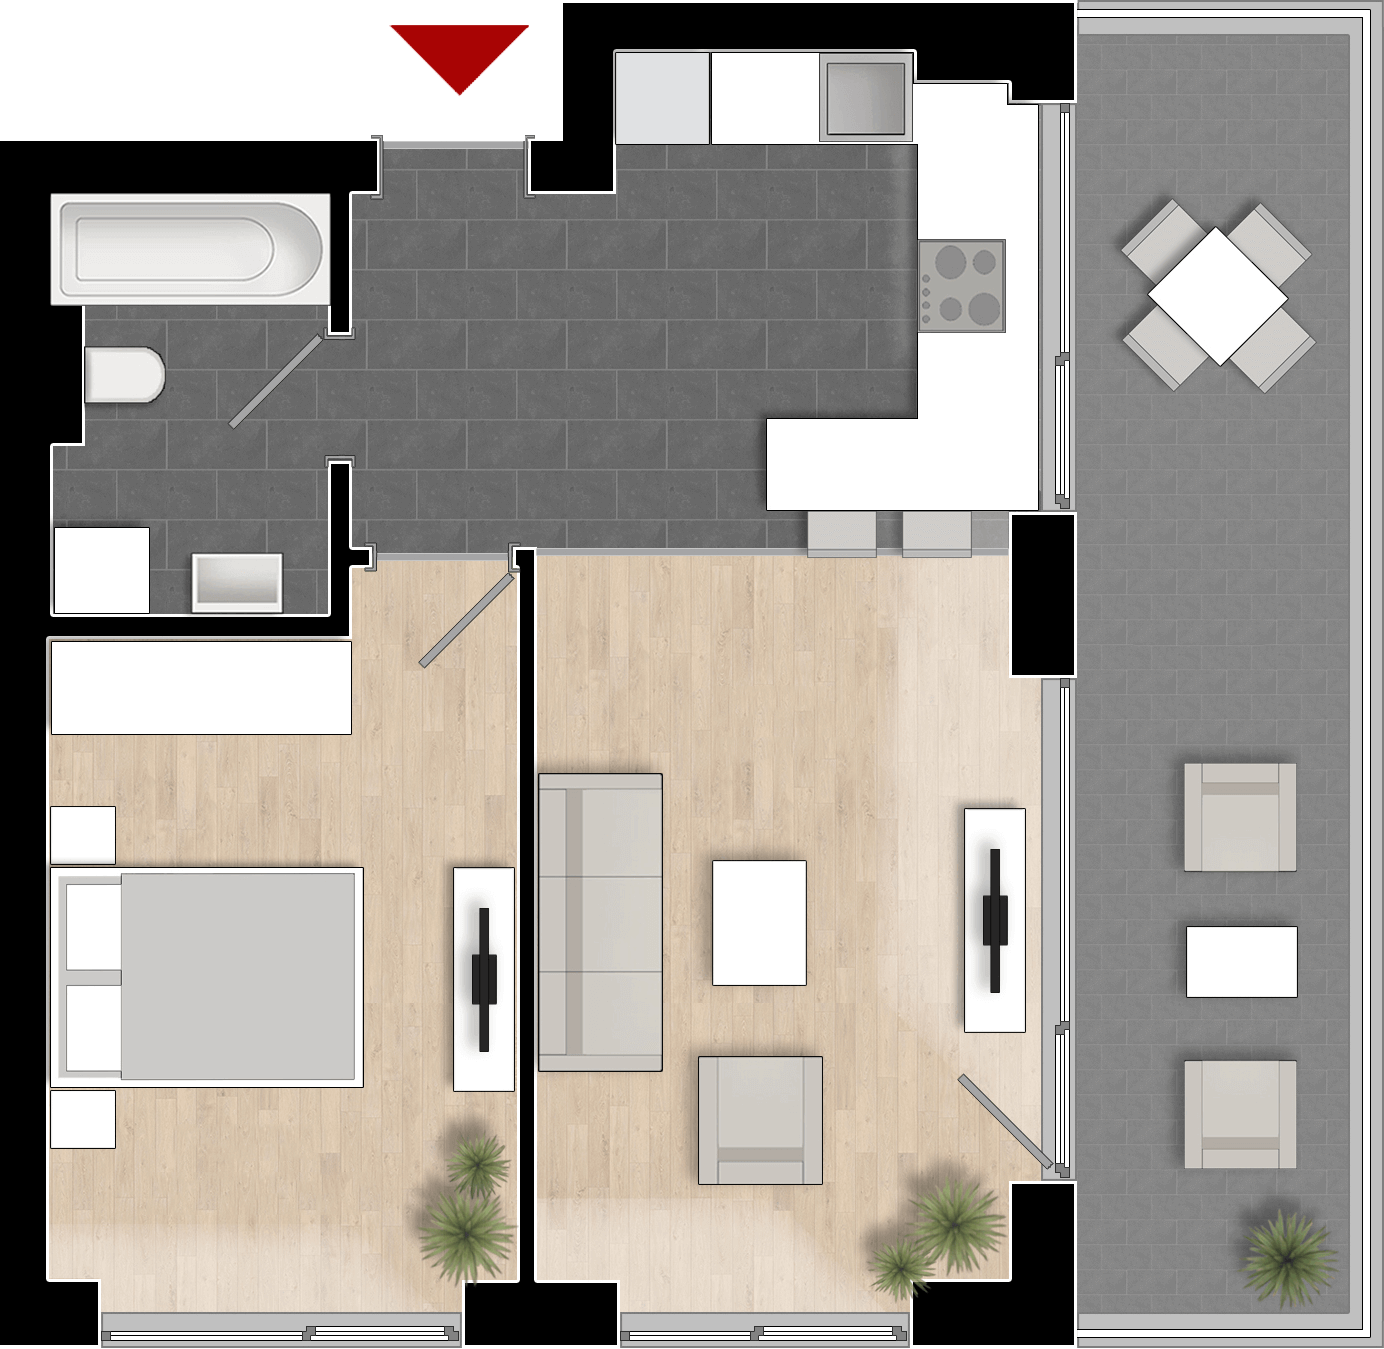  Apartament 810, Tip de apartament 1B cu 2 camere 